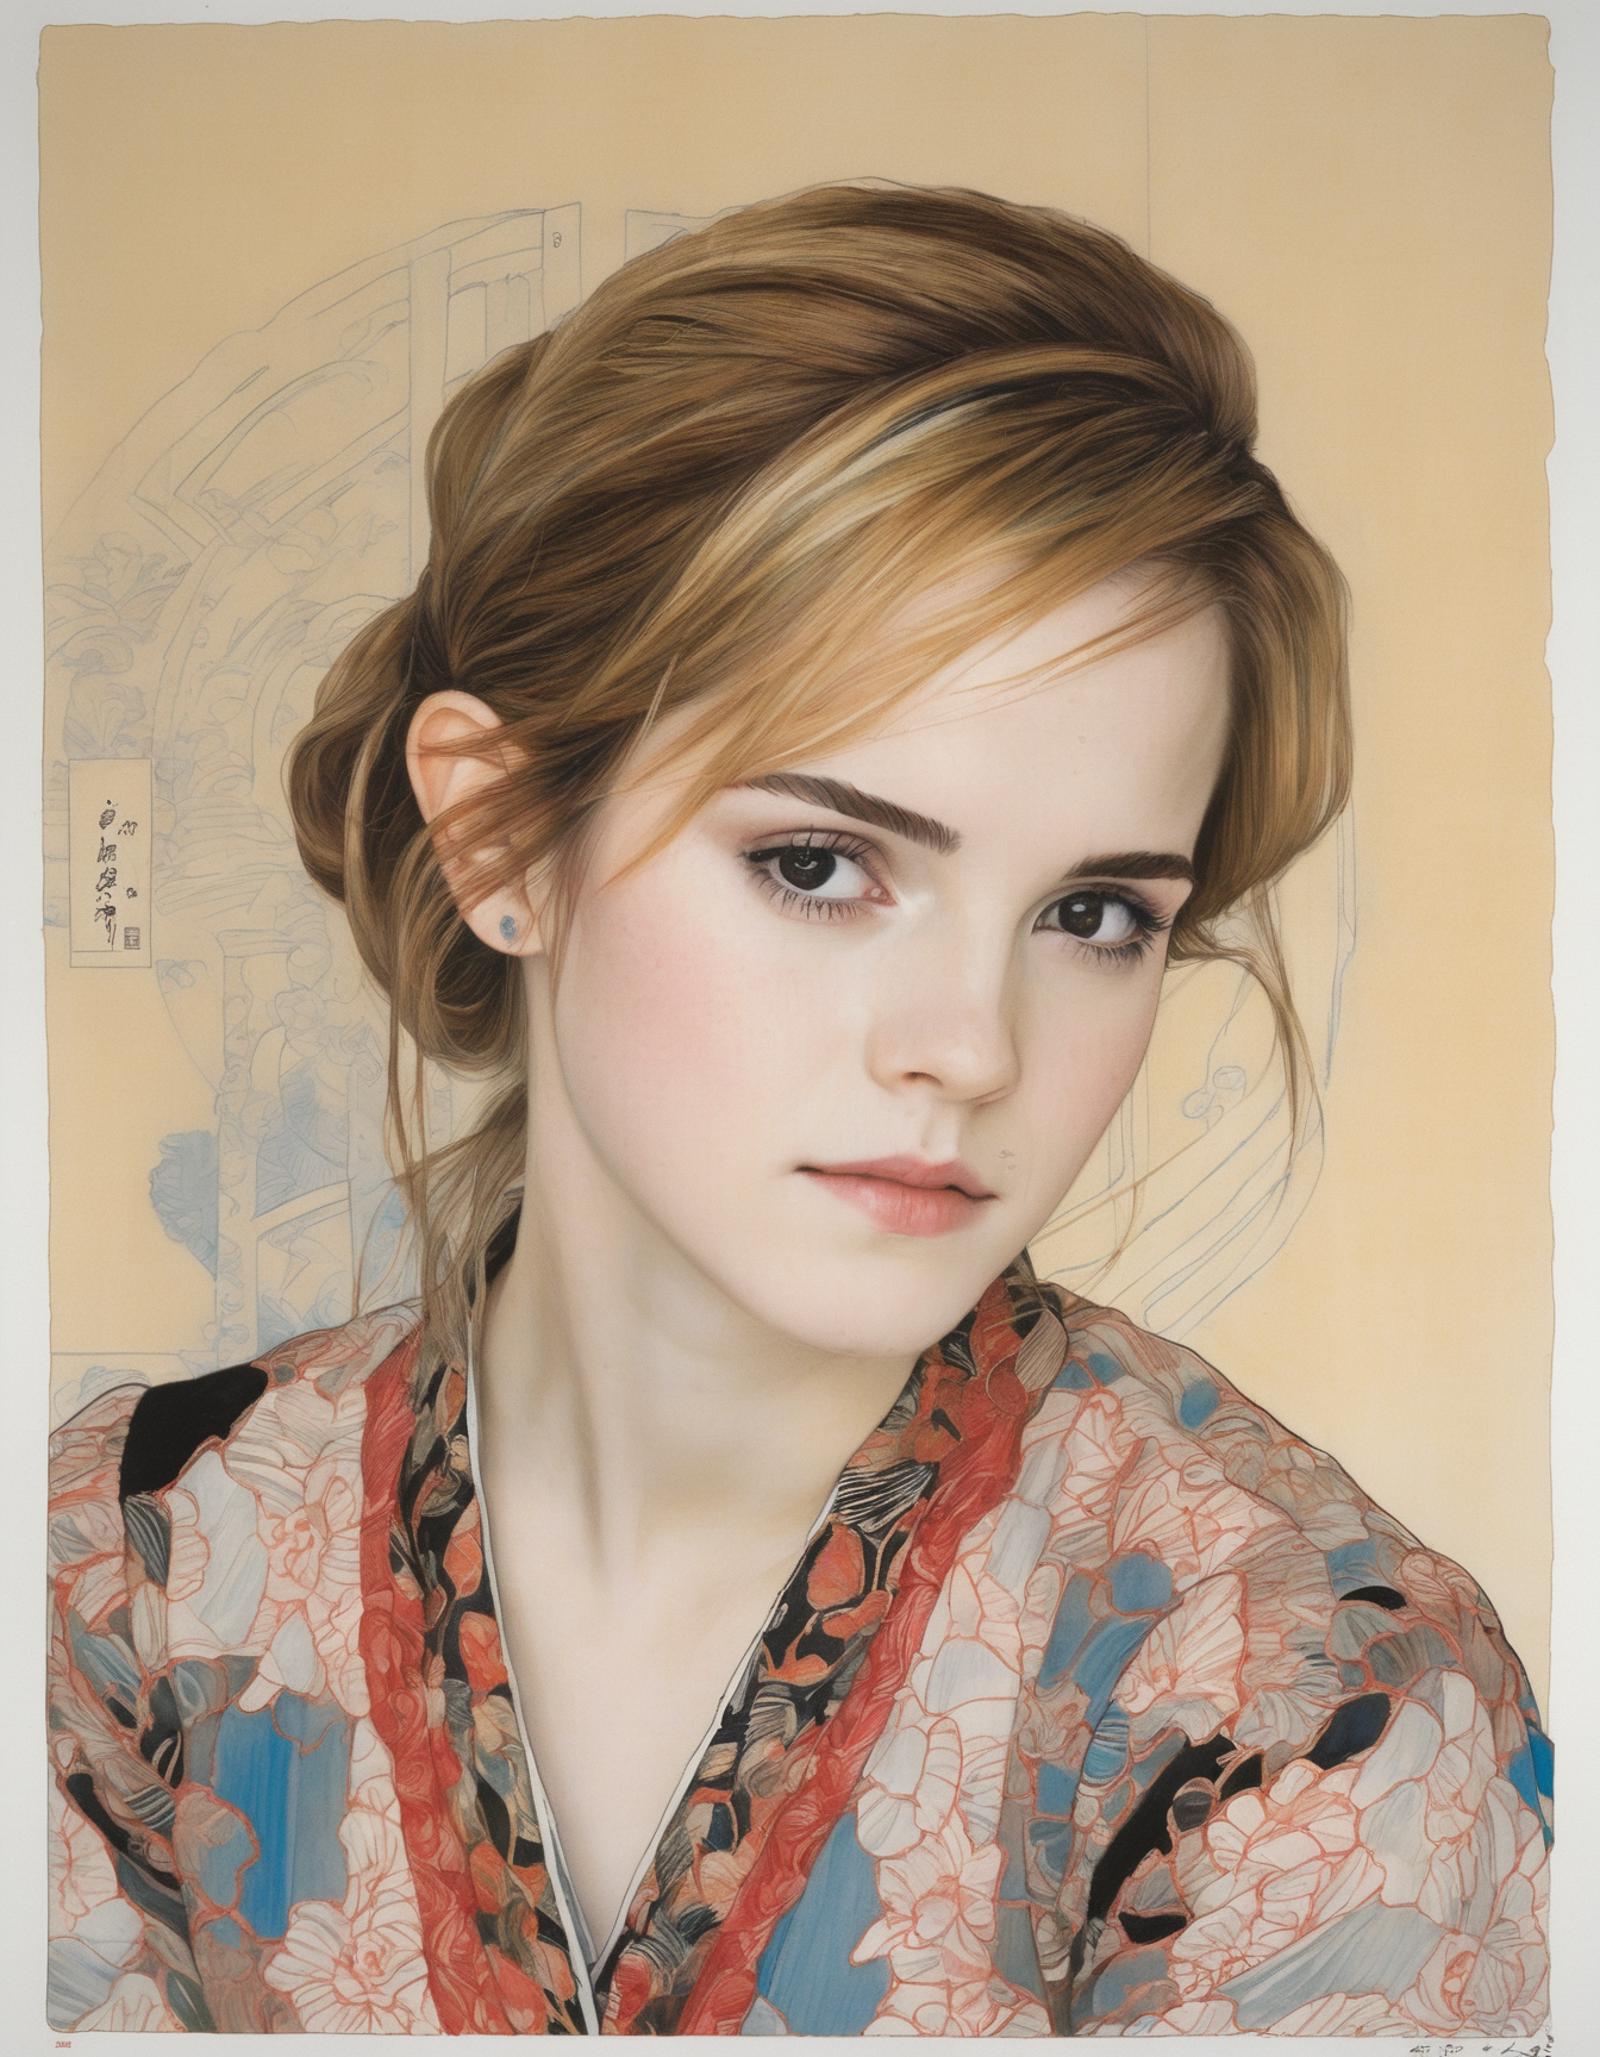 Emma Watson 2010 SDXL image by razzz